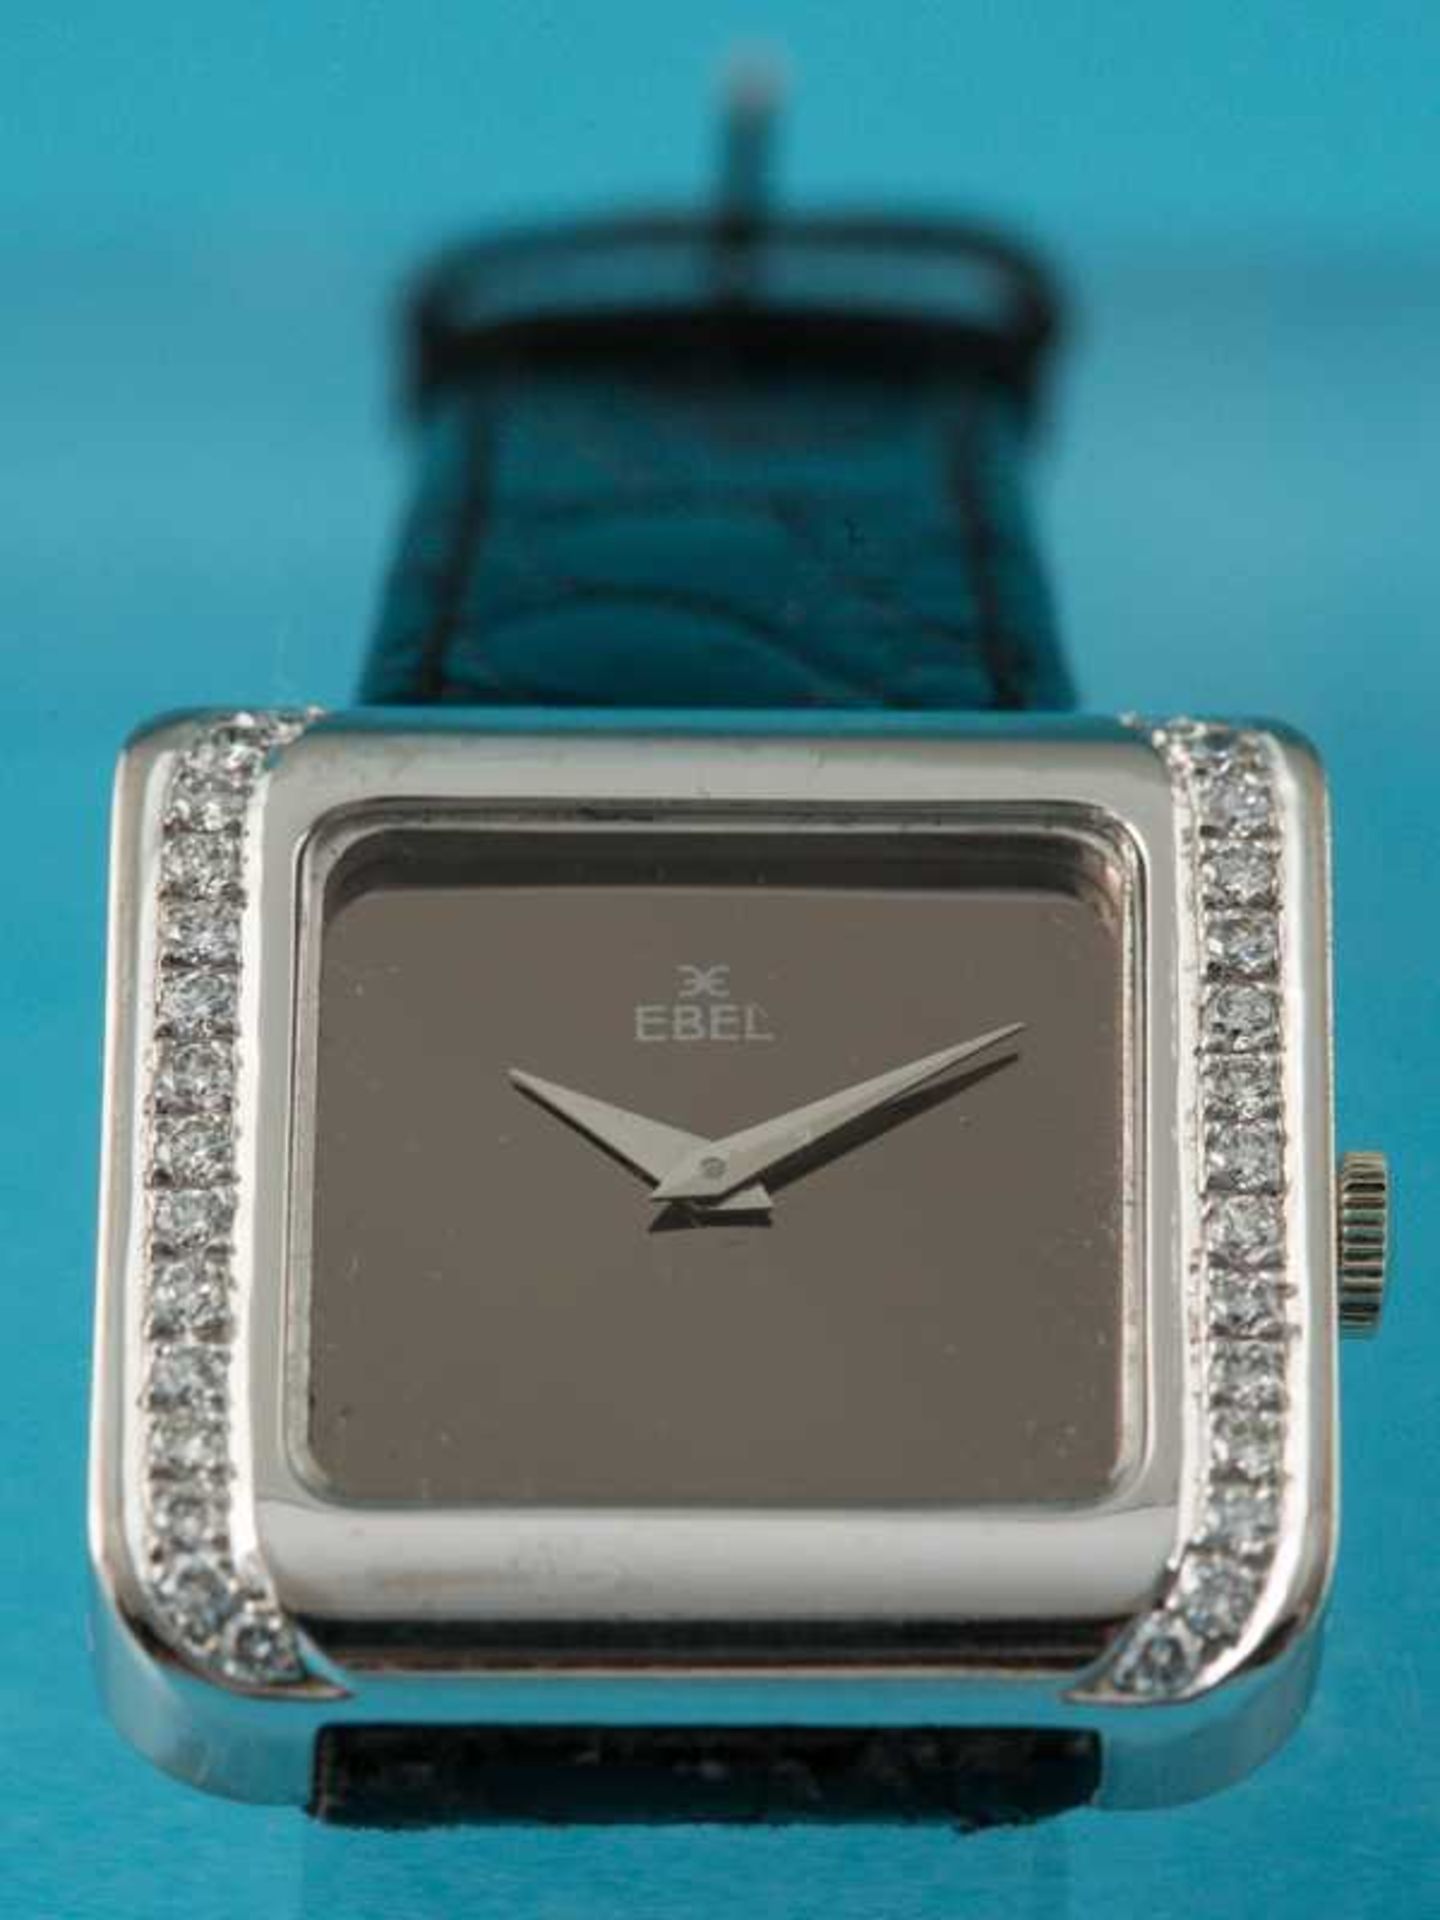 Armbanduhr, bezeichnet Ebel, mit 30 Brillanten, zusammen ca. 0,6 ct, 20. Jh. 750/- Weißgold. - Image 2 of 4